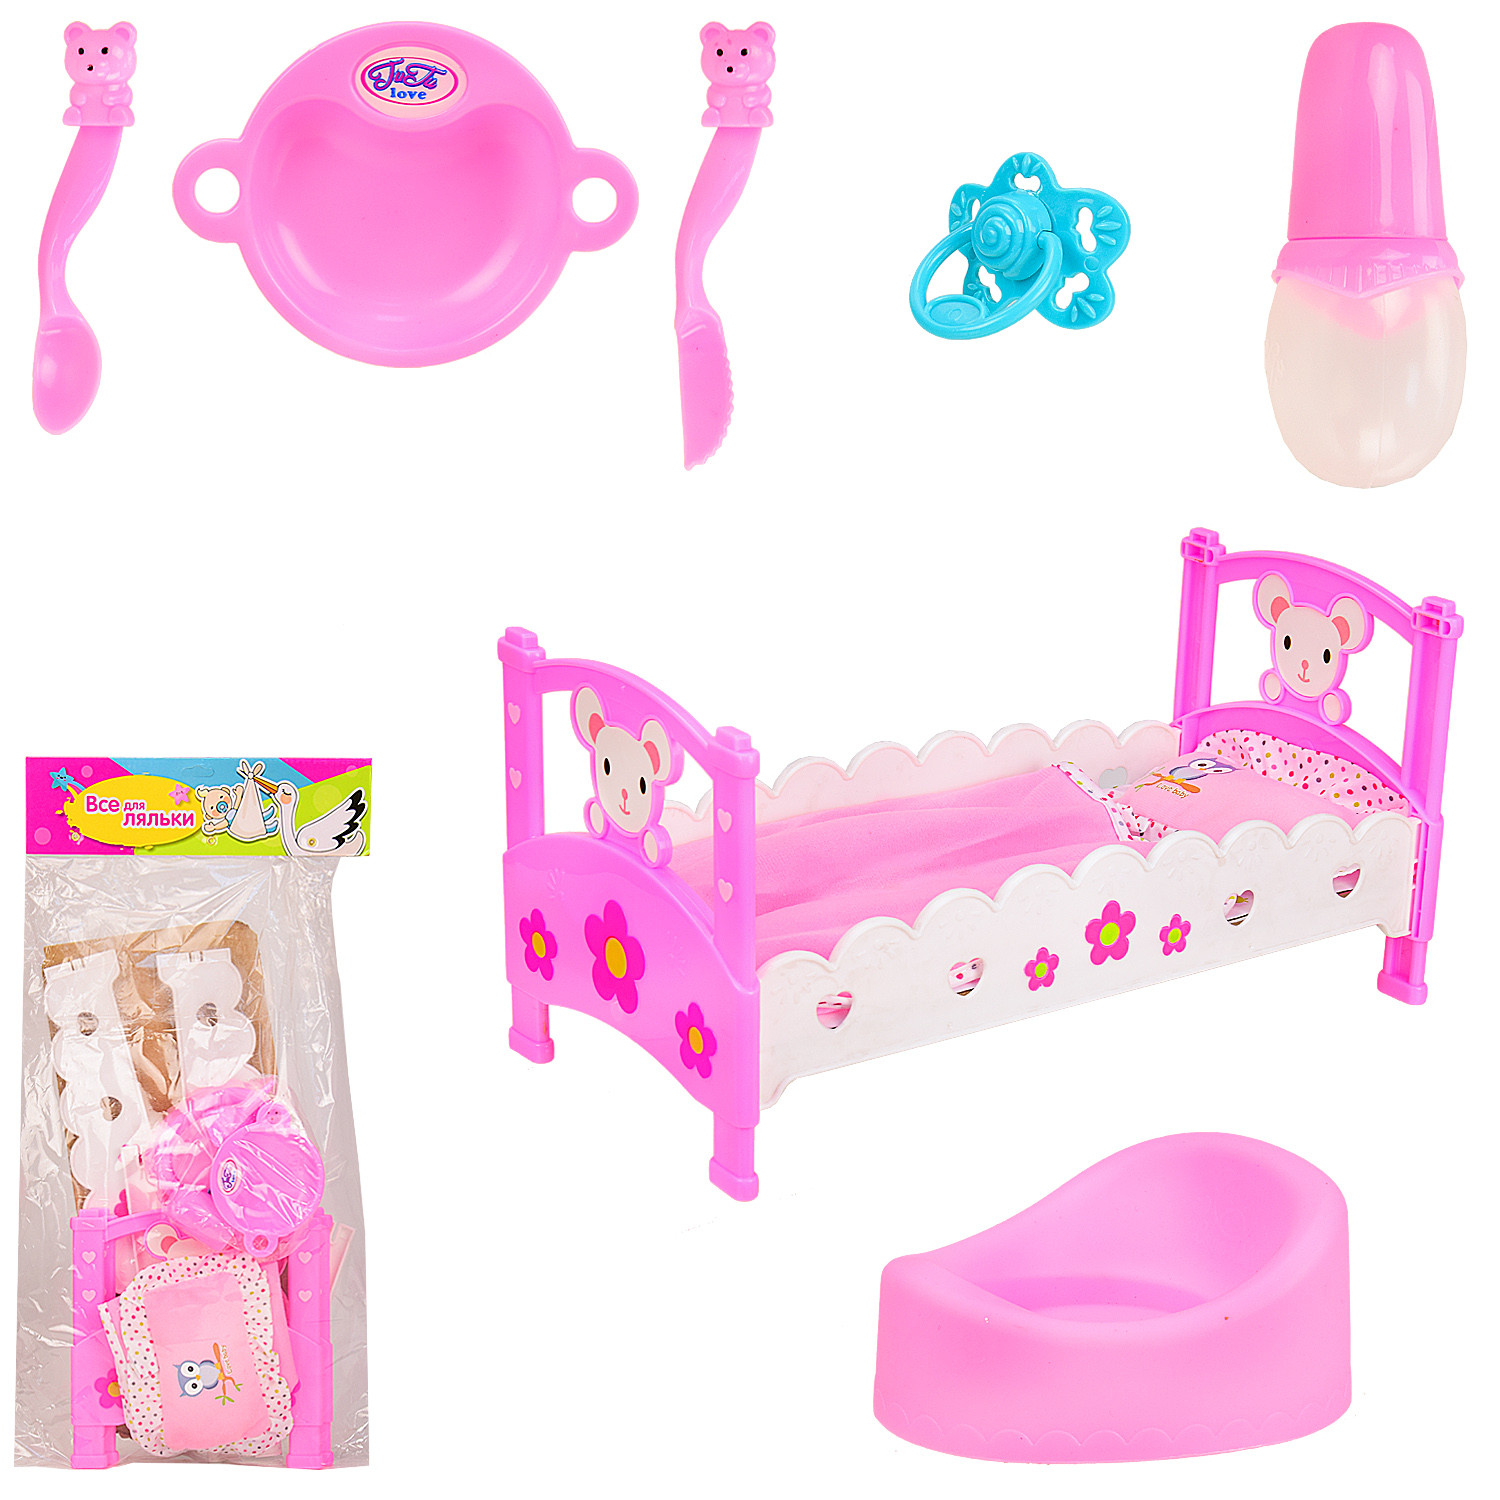 Спальня для кукол: разнообразие наборов игрушечной мебели